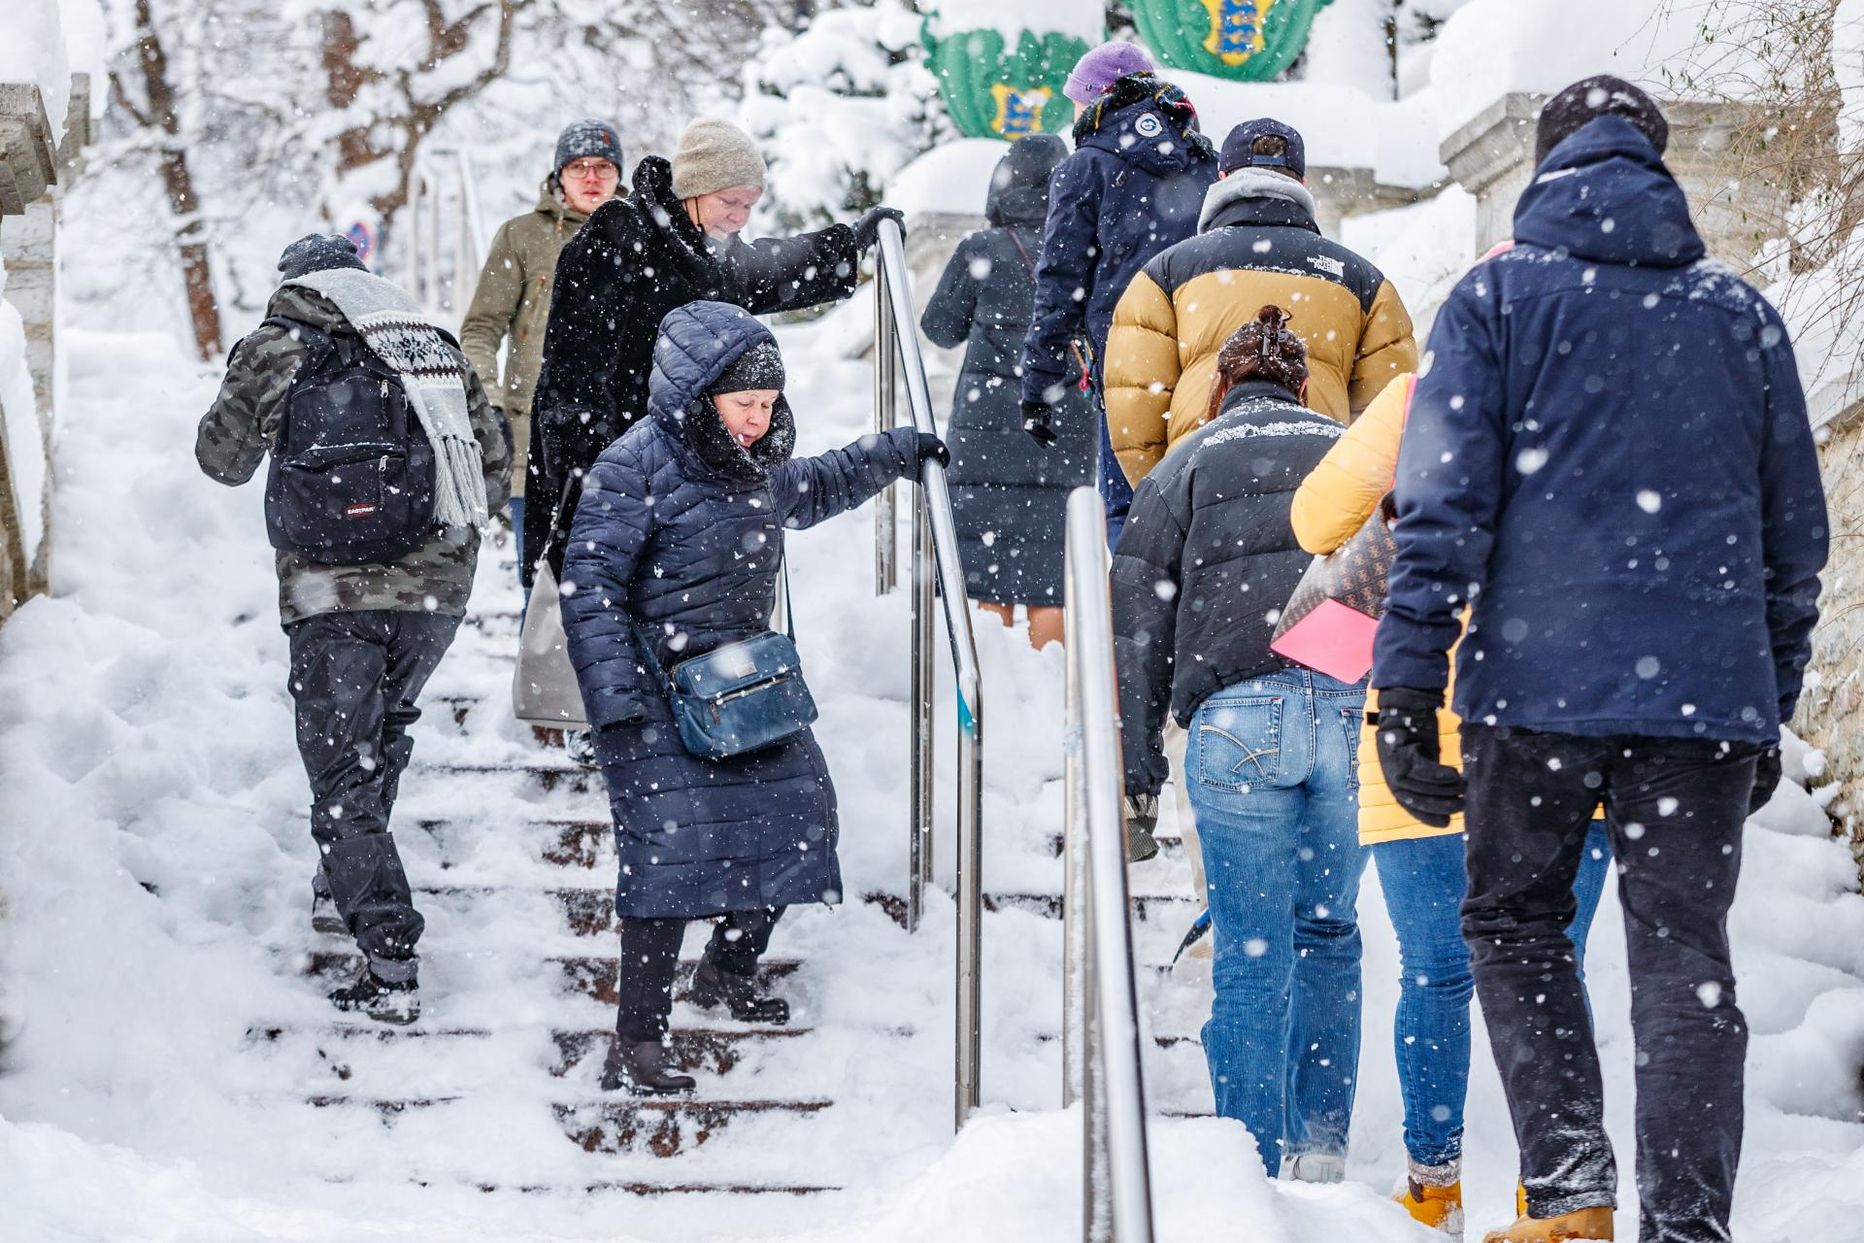 Praegu tuleb Tallinnas lume- ja libedusetõrjega tegeleda kinnistuomanikel.